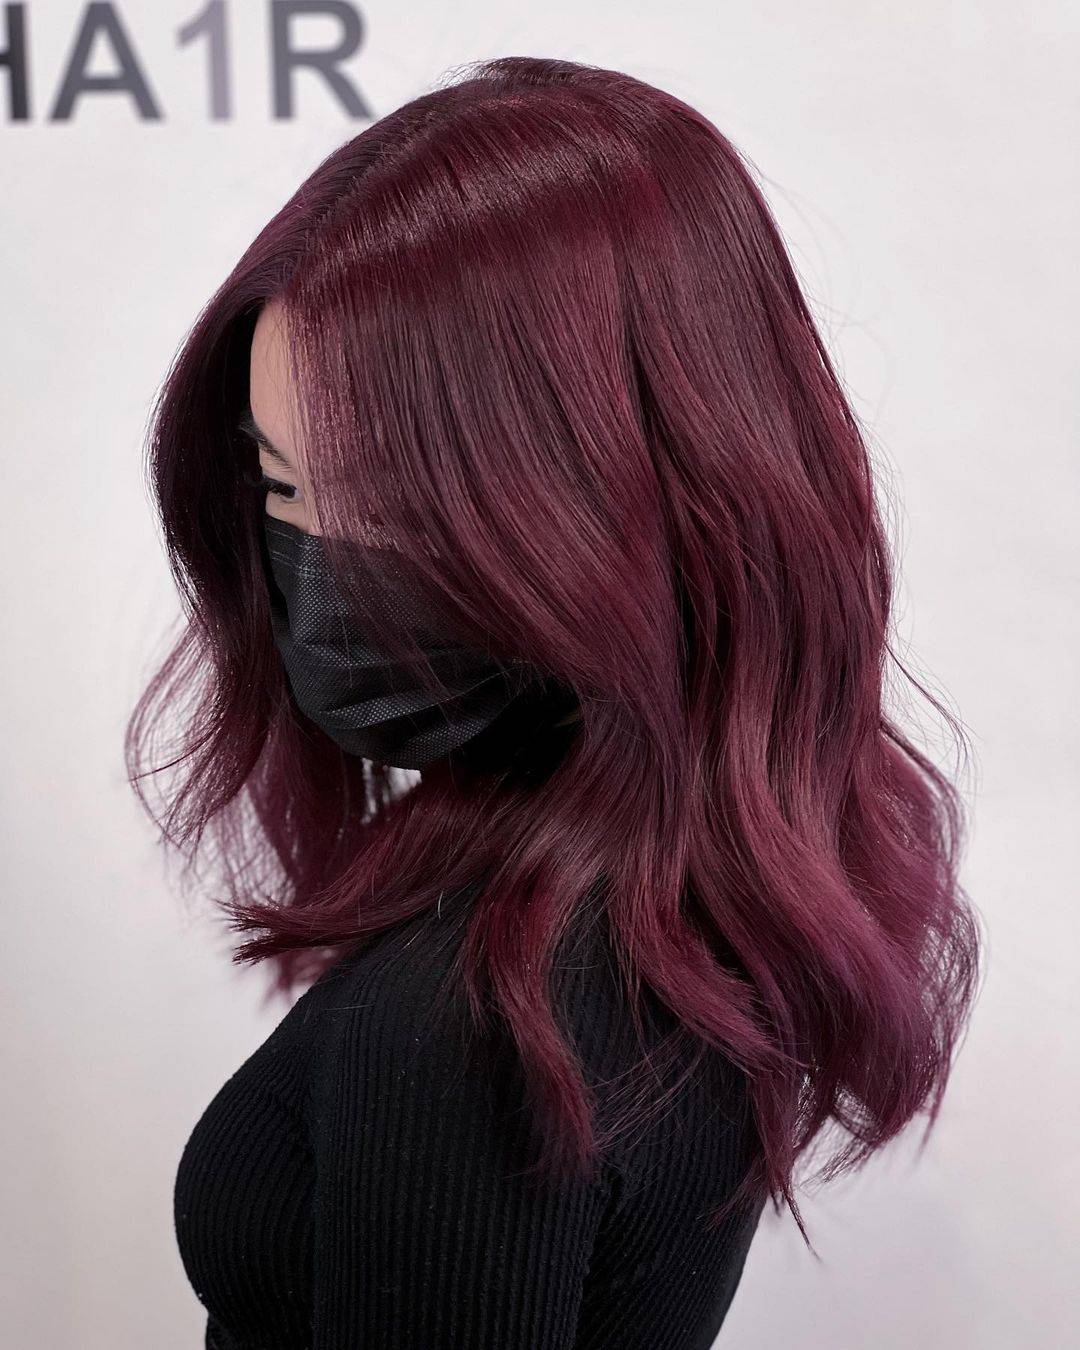 Burgundy hair color 325 burgundy hair color | burgundy hair color for women | burgundy hair color highlights Burgundy Hair Color